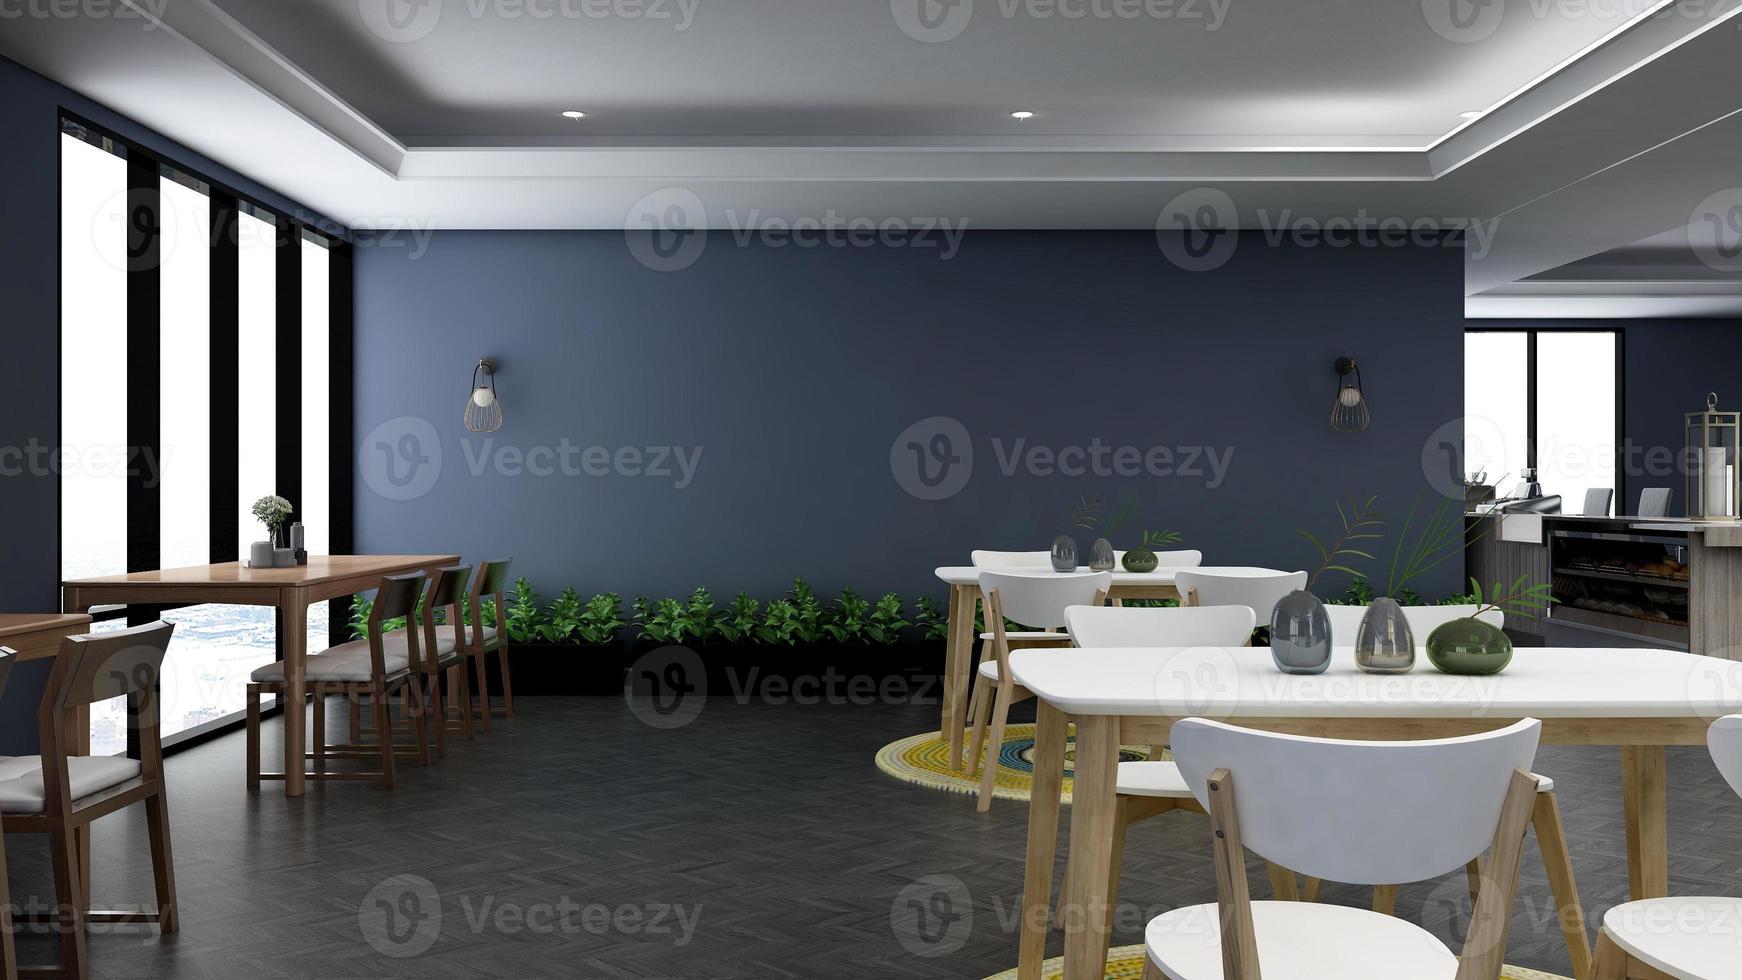 Modern cafe in 3d render of interior design mockup - Cafe ideas photo